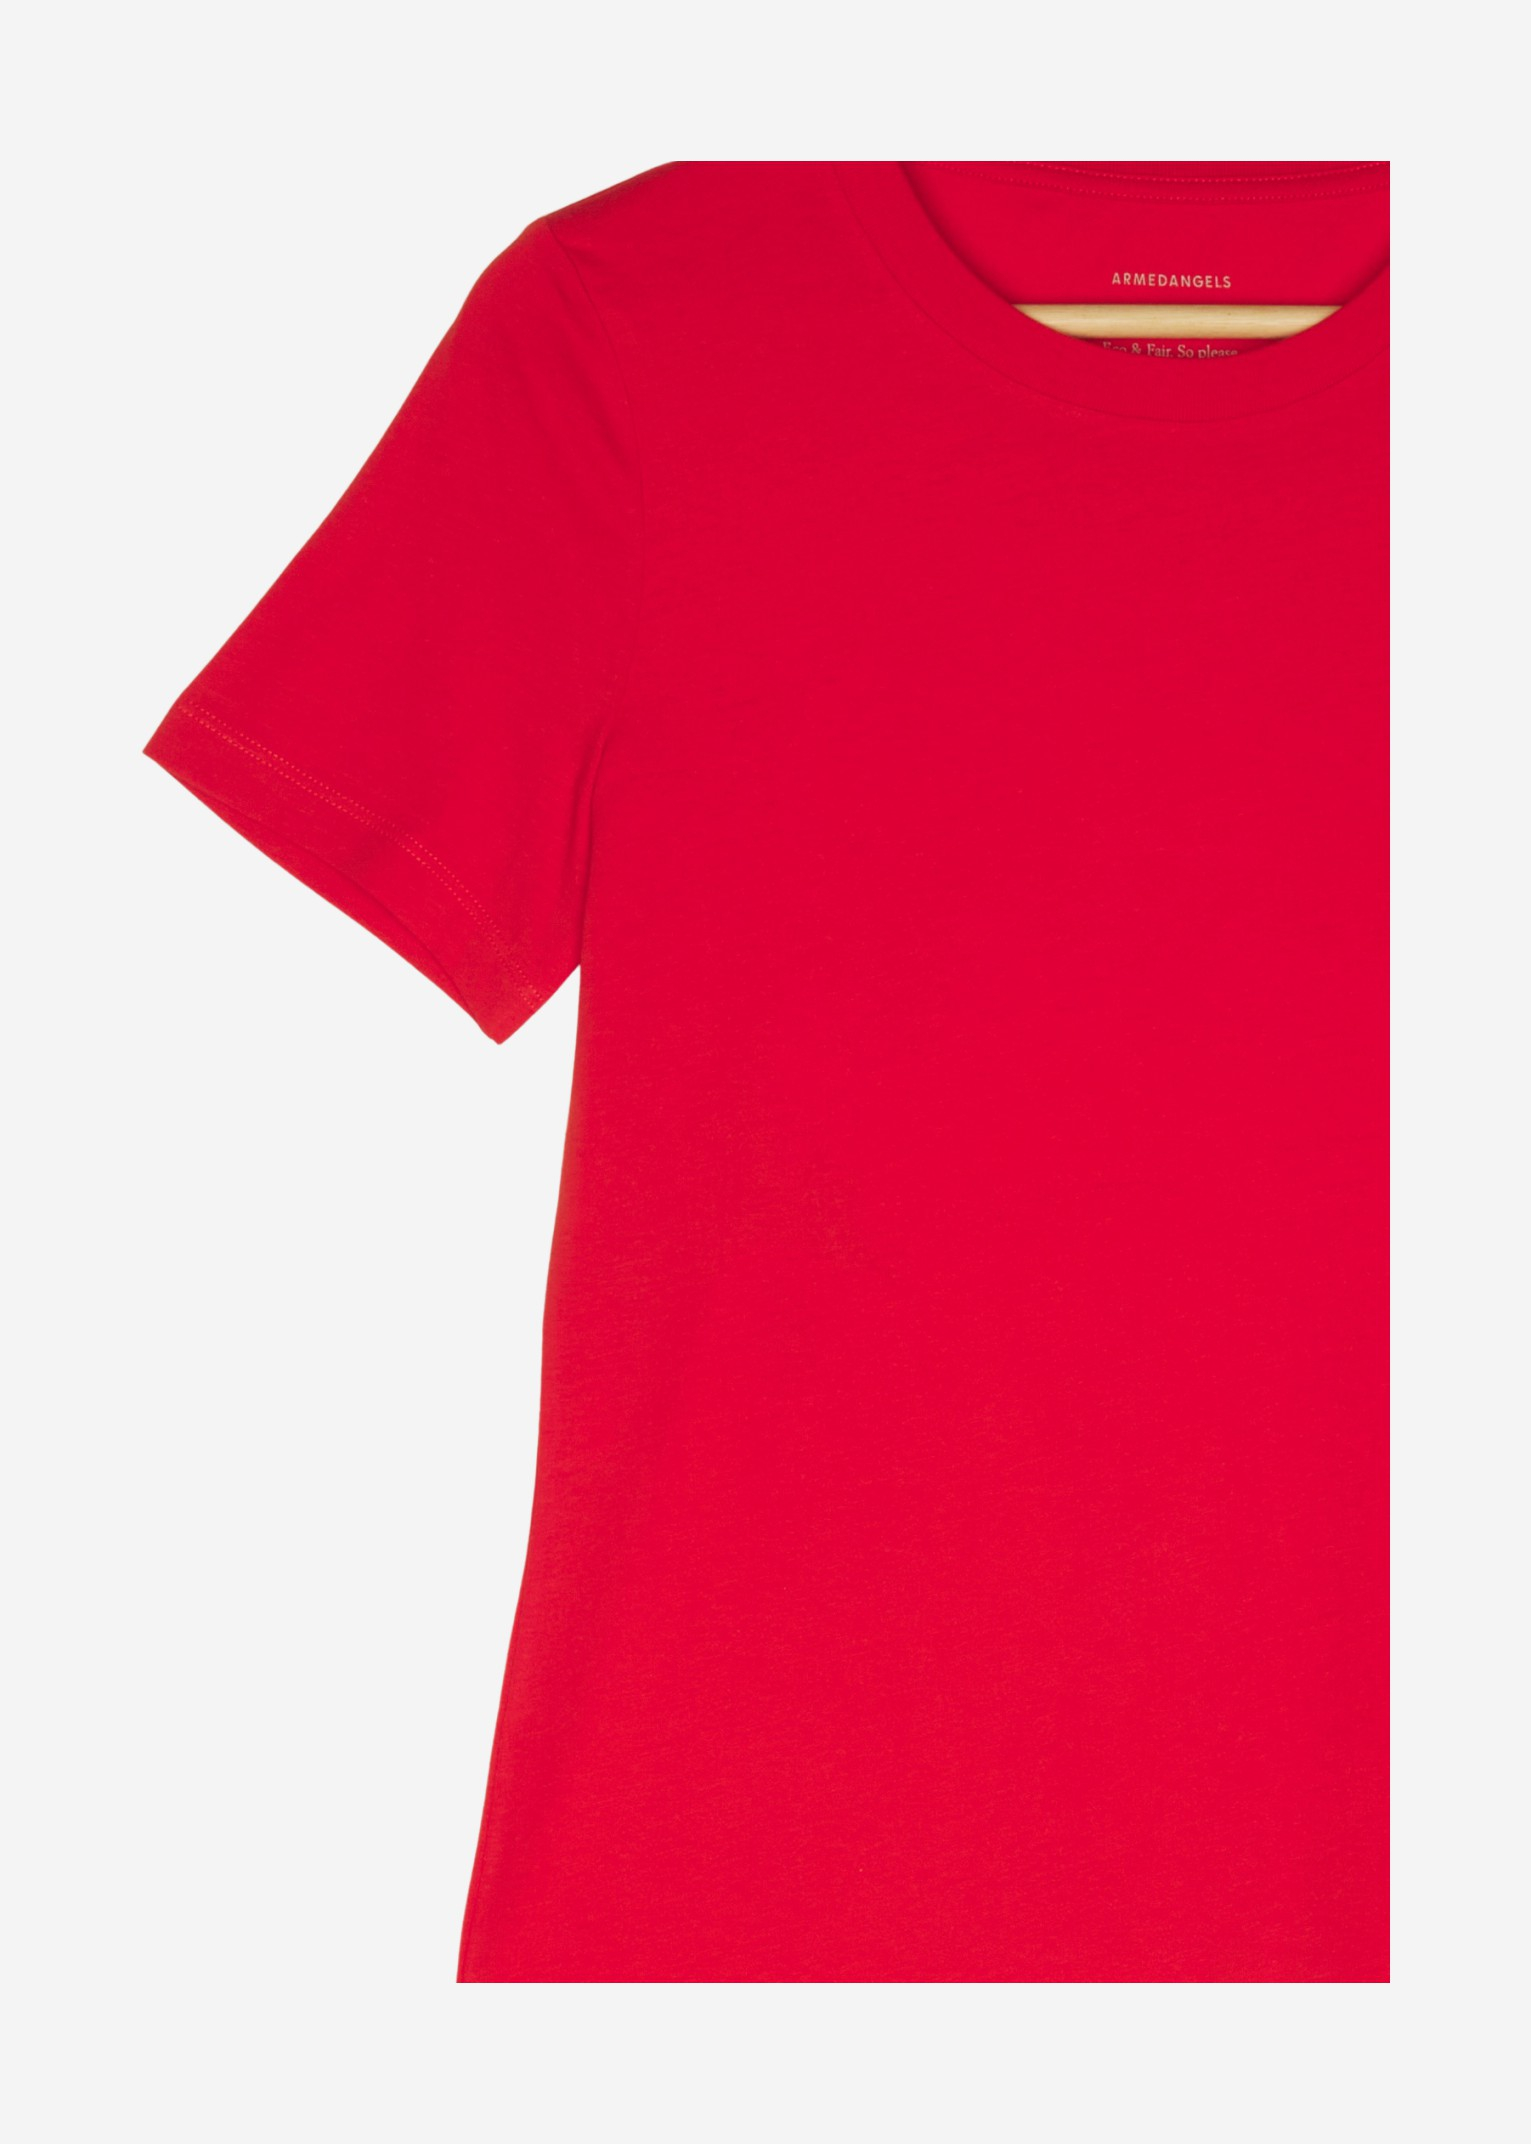 women Tops & T-Shirts Shirts / T-Shirt Red